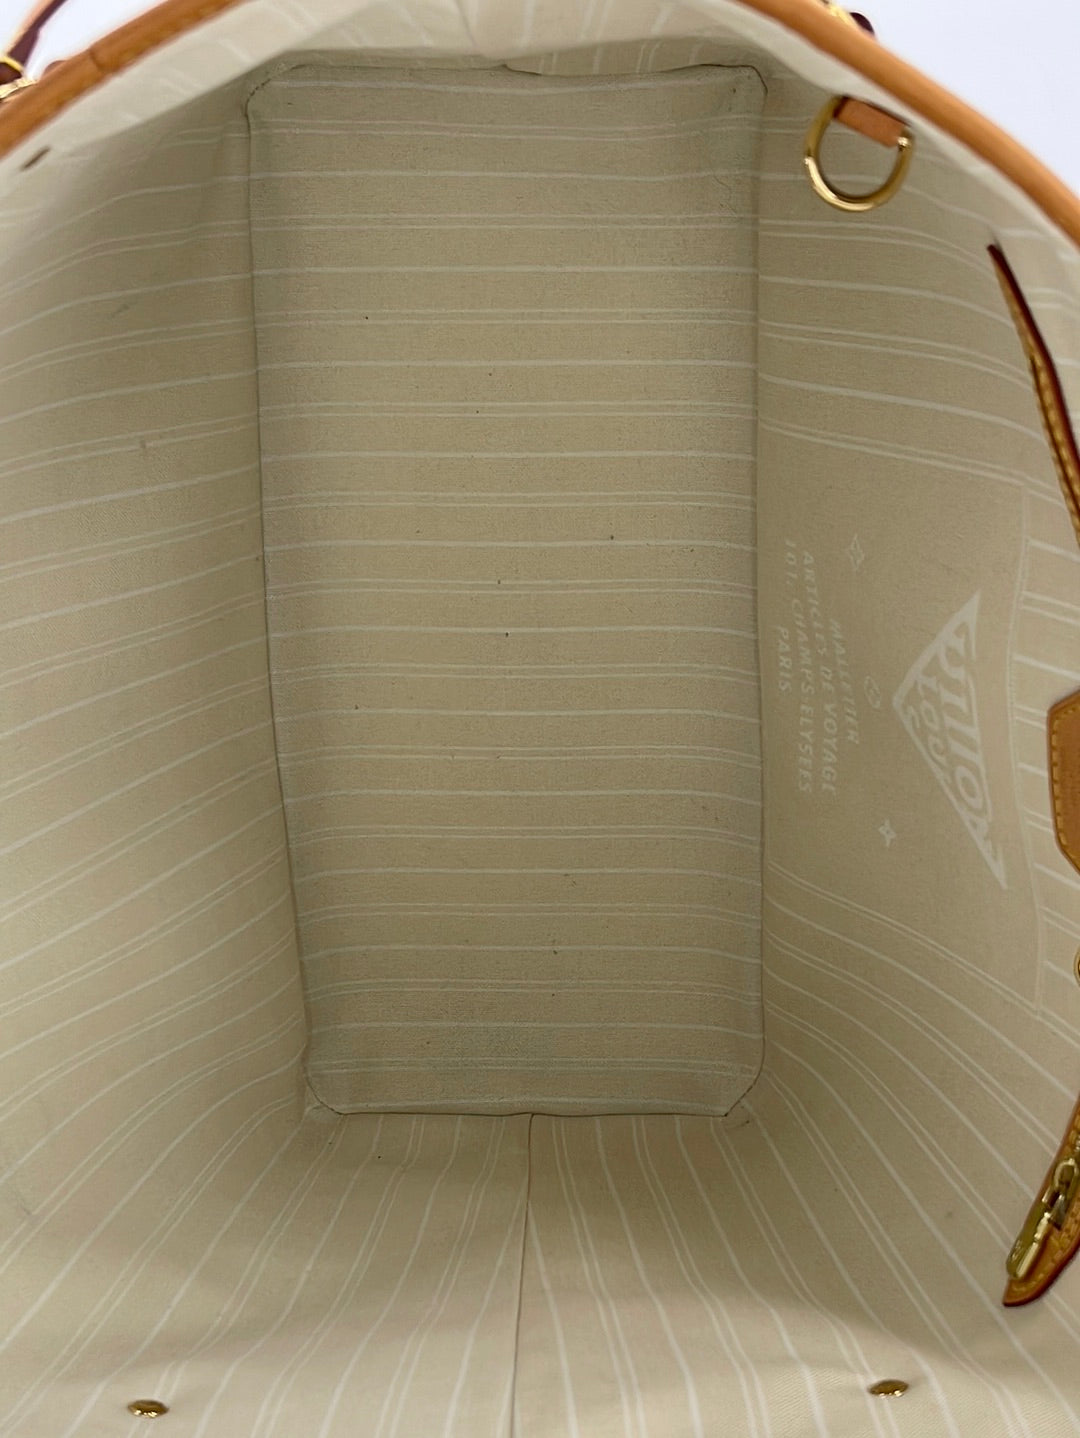 NTWRK - 082323 SNEAK PEEK Preloved Louis Vuitton Monogram Nano